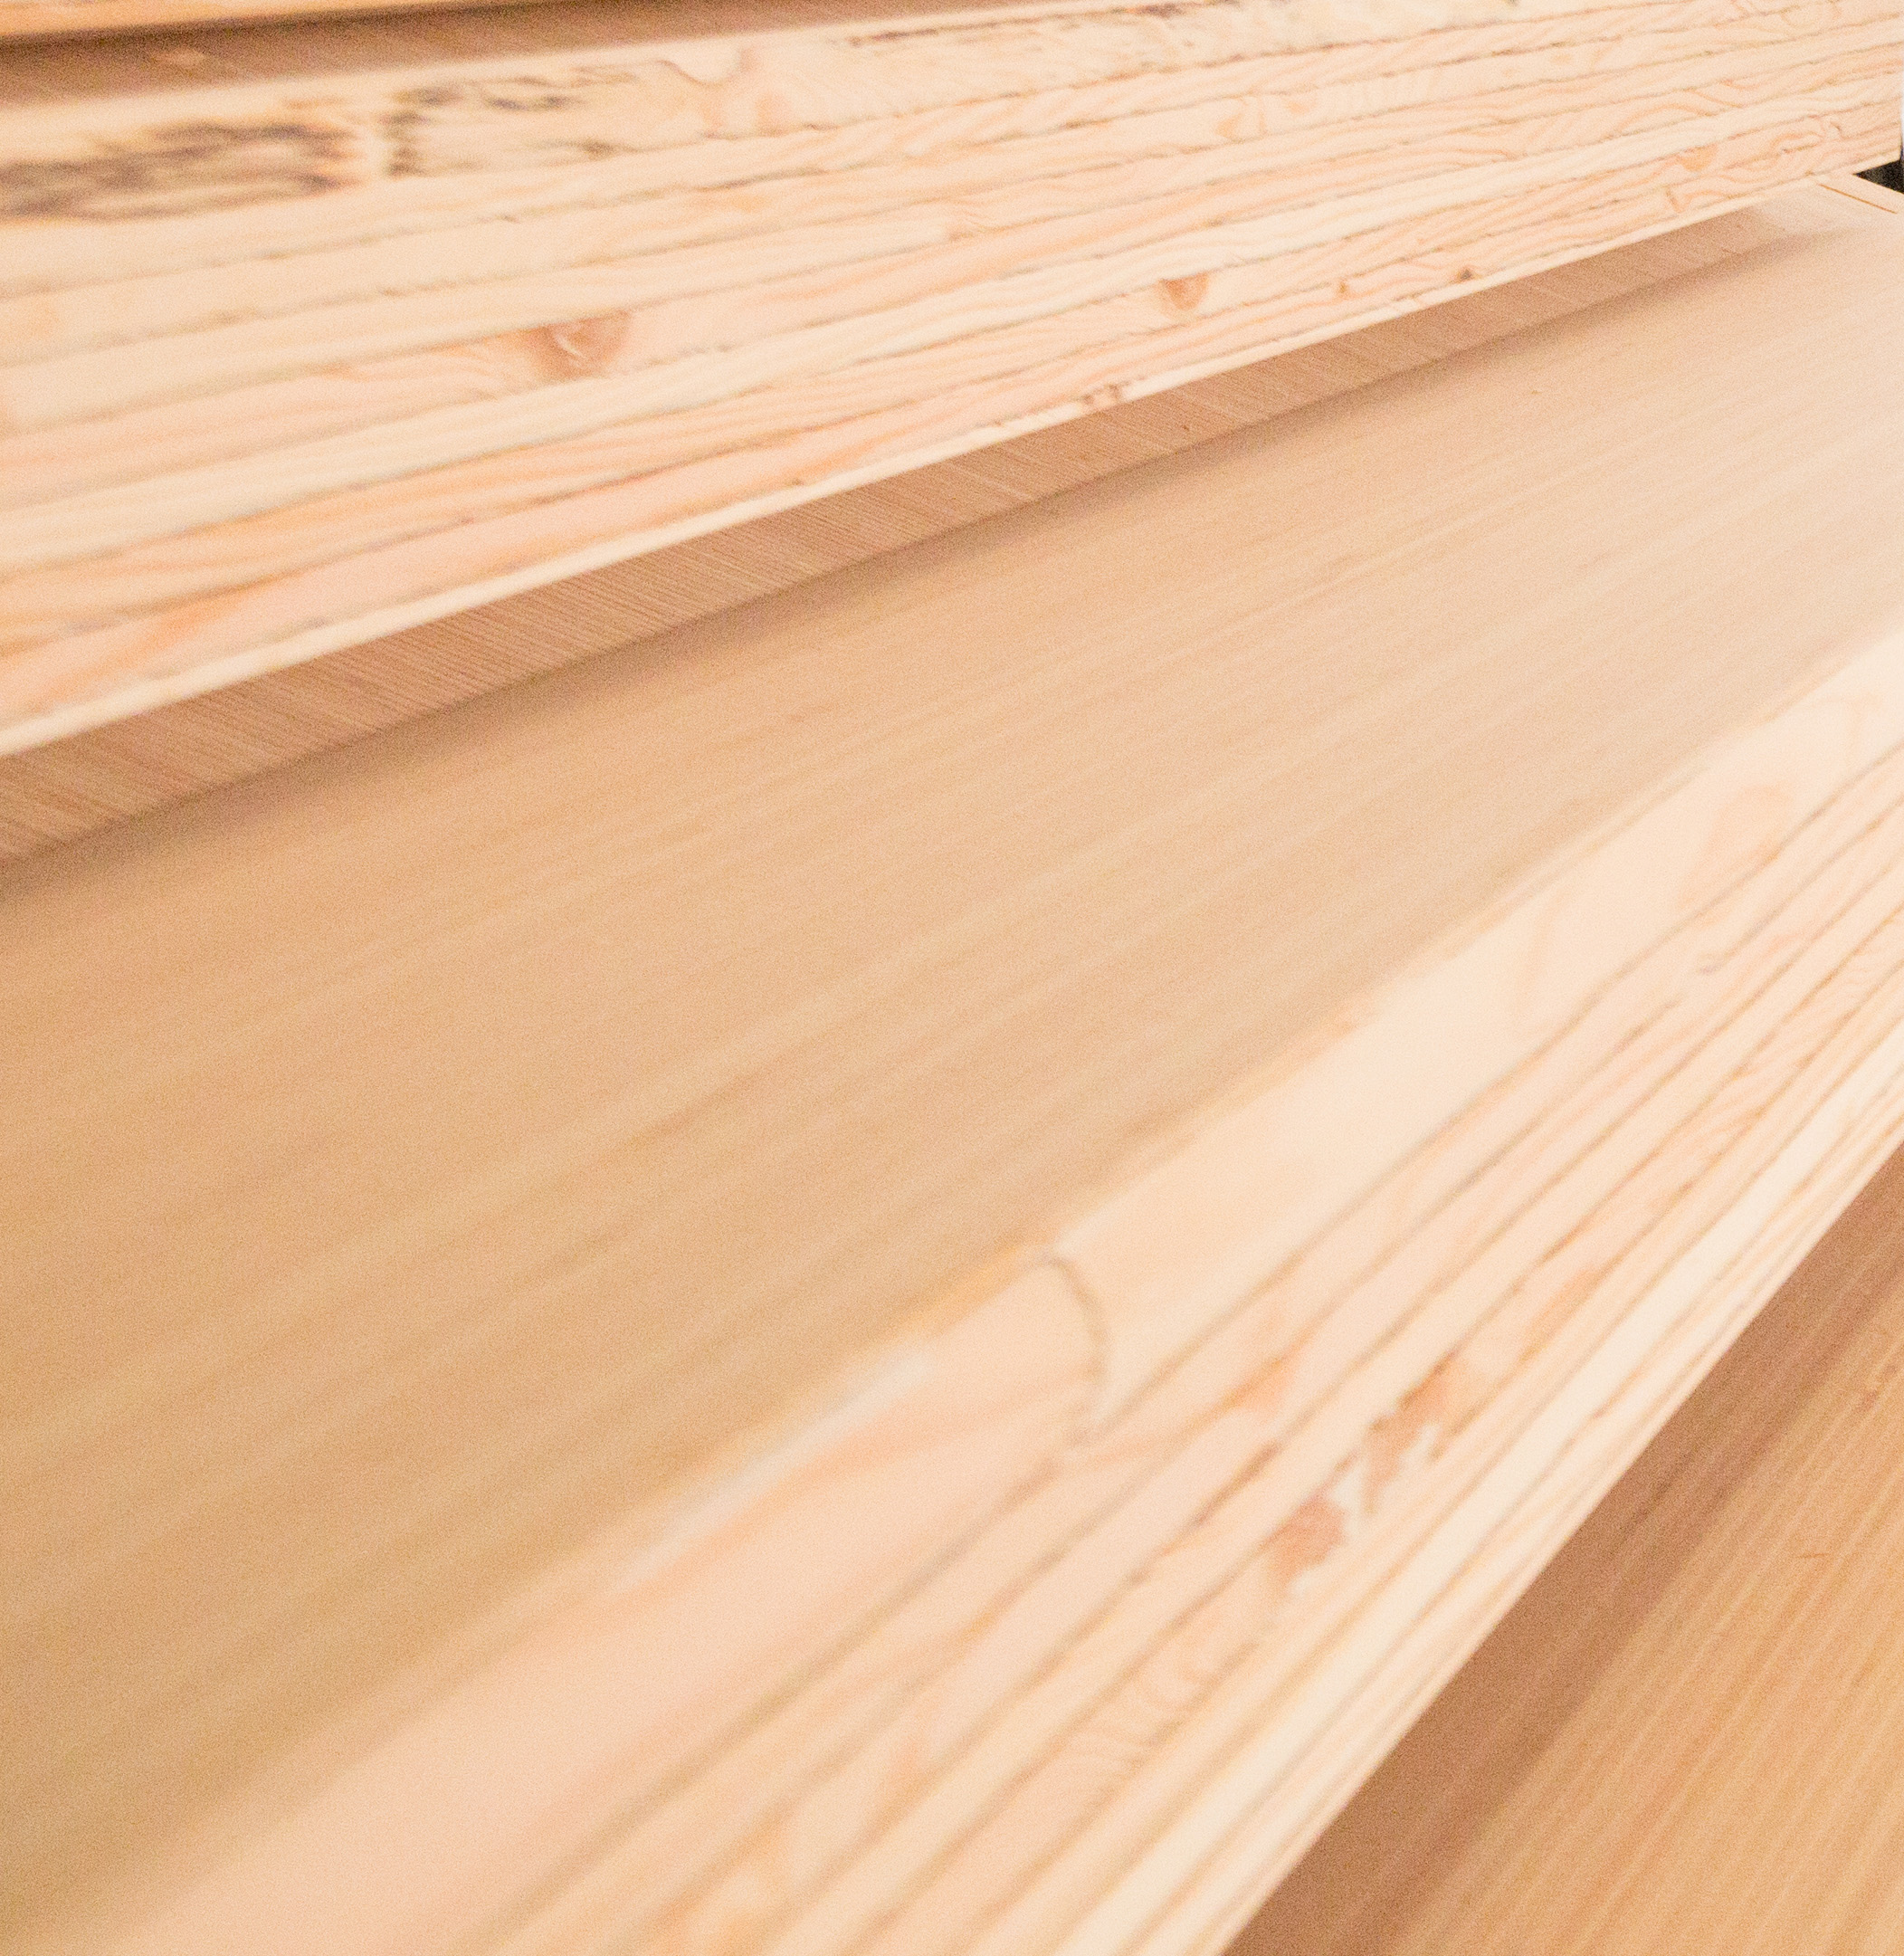 近距离的叠层单板木材(级),一个公元前的几种不同的木材产品质量,而制造